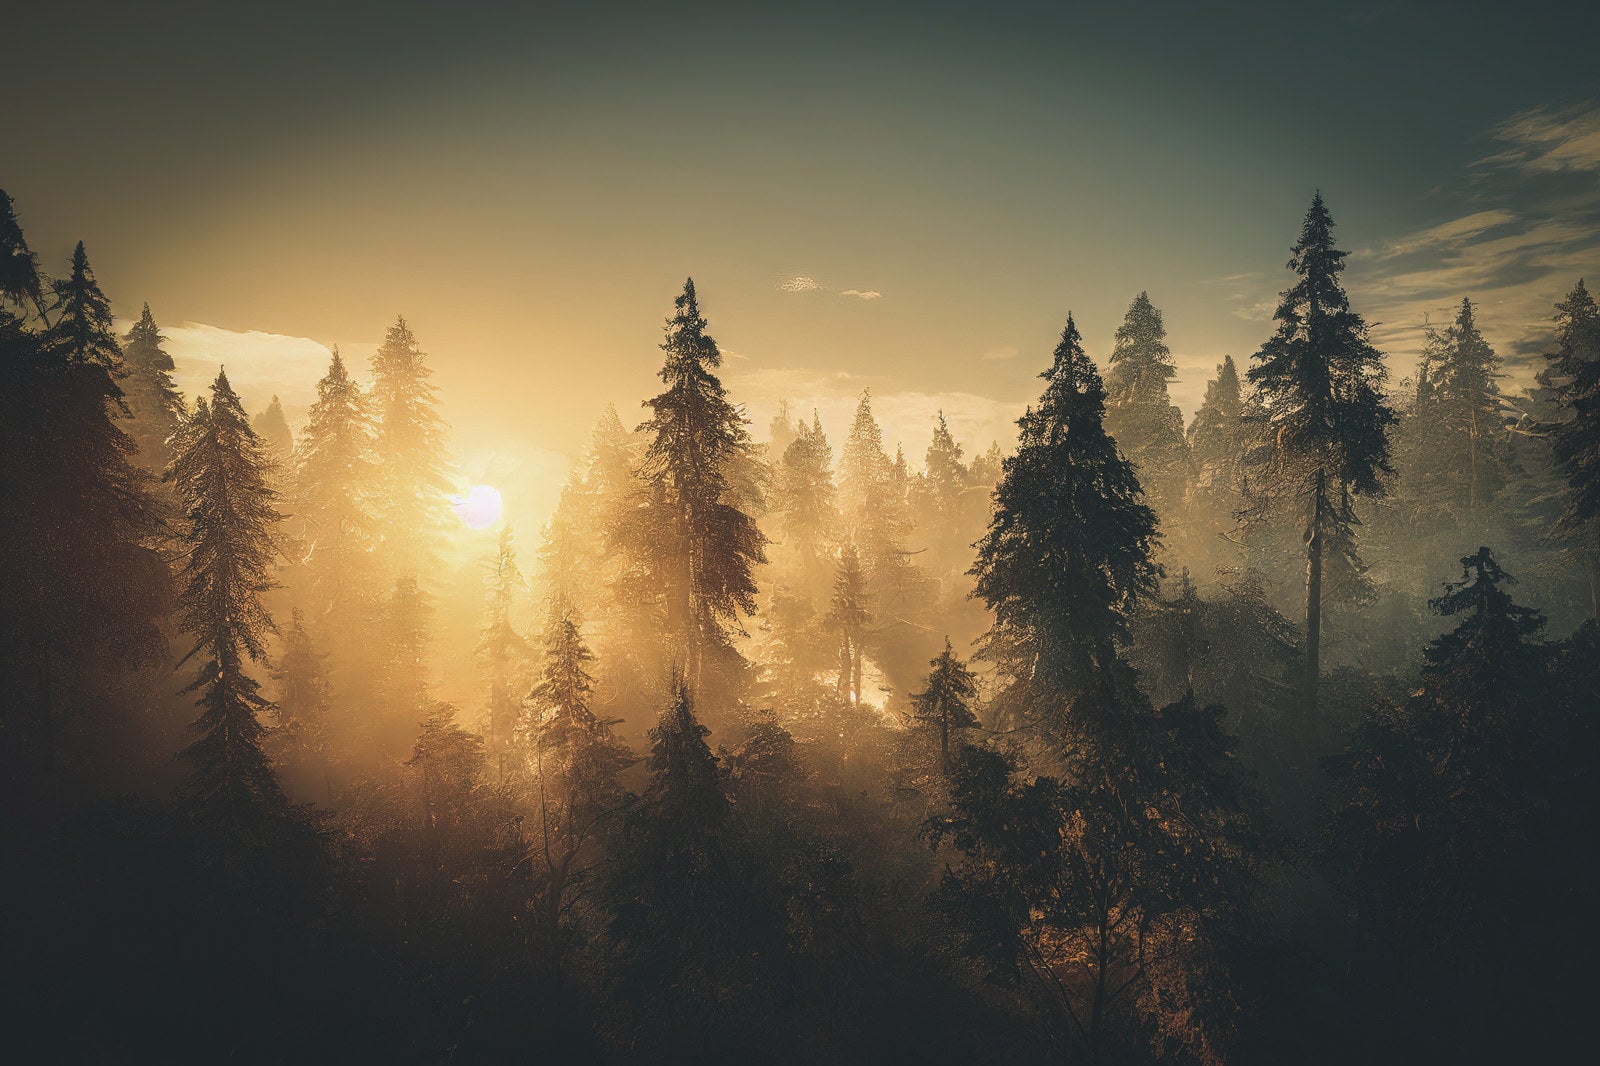 「木々の間に沈む夕日」の写真